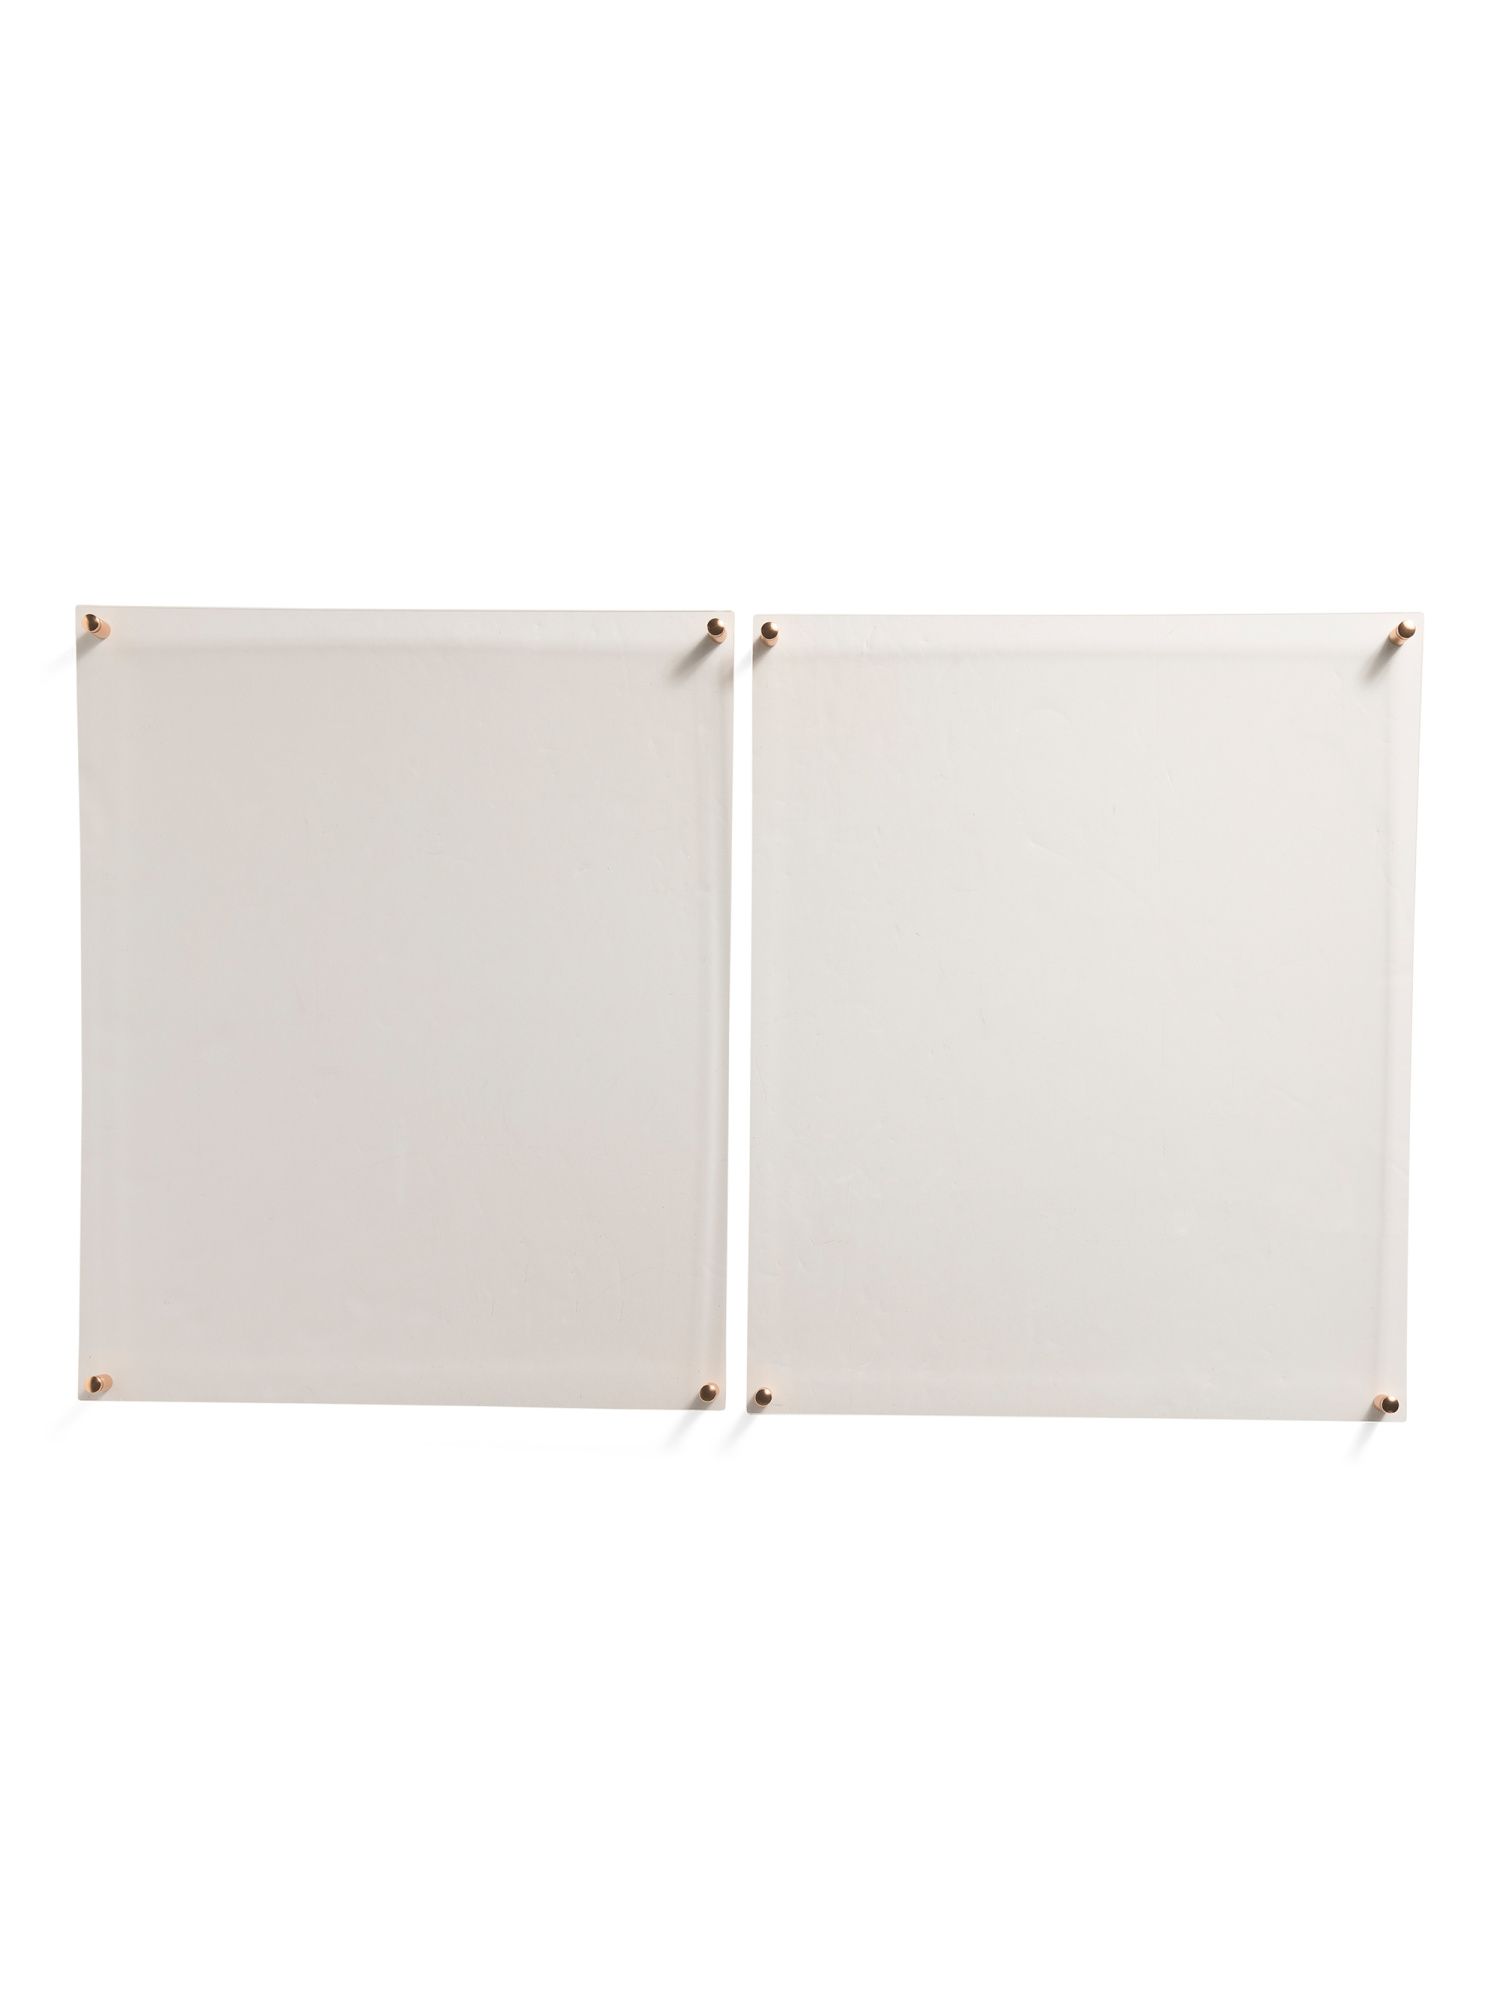 16x20 2pc Acrylic Clear Float Wall Frames | TJ Maxx